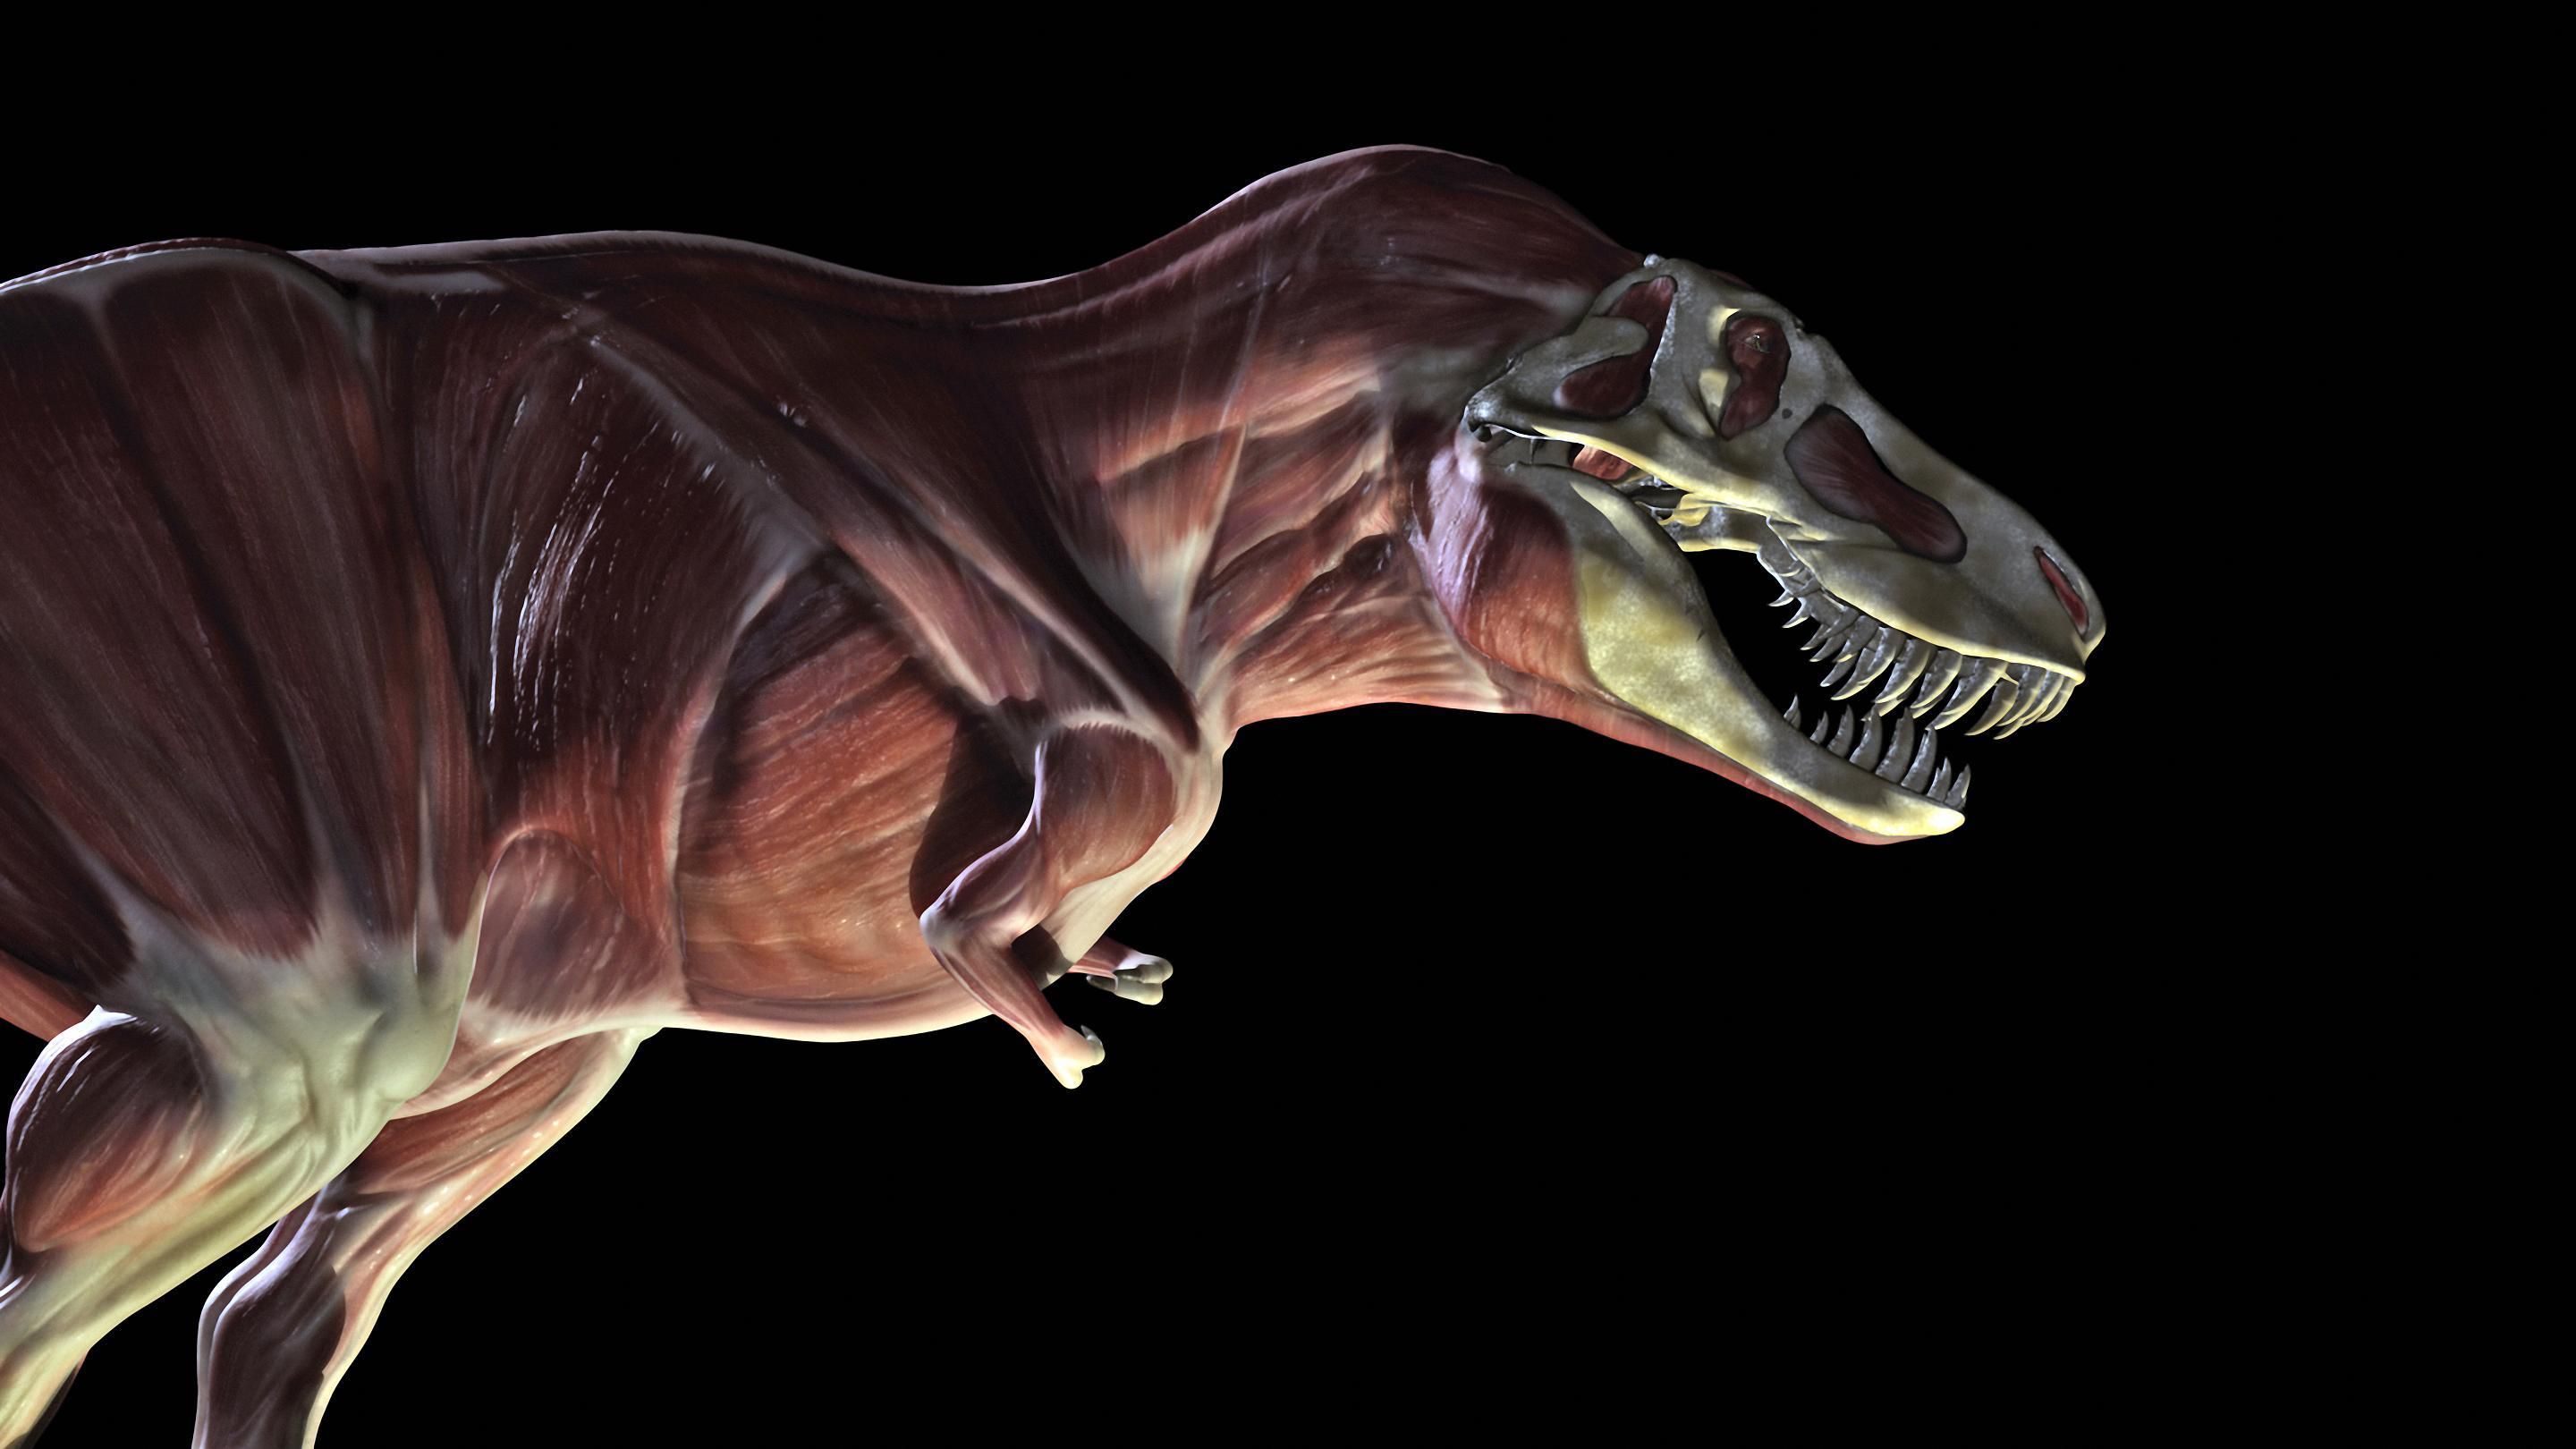 巴塔哥巨龙最大恐龙背后的真相 - 知乎